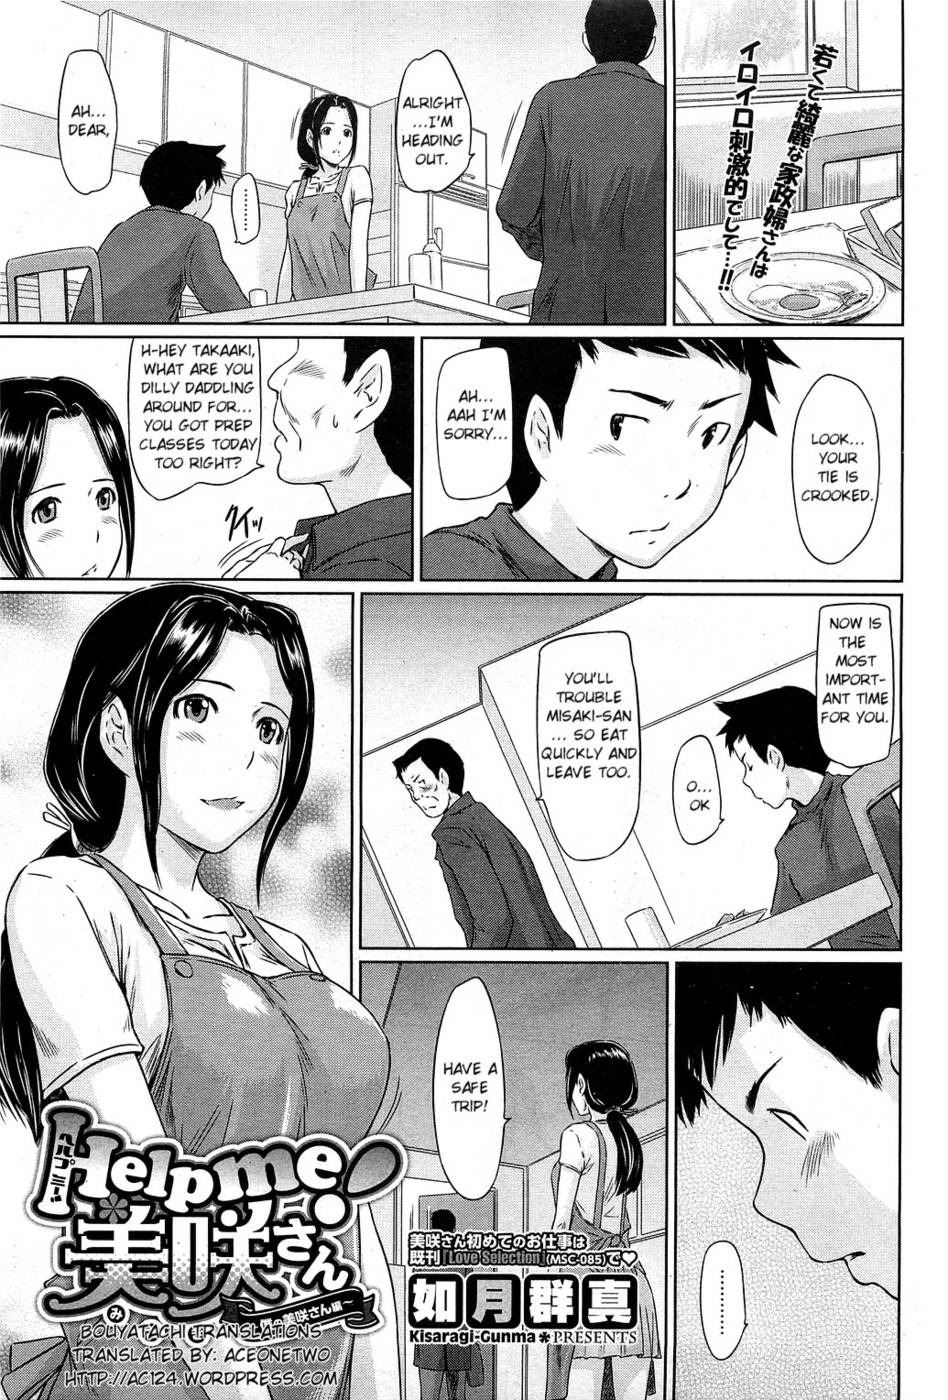 Hentai Manga Comic-Help Me! Misaki-san-Read-1